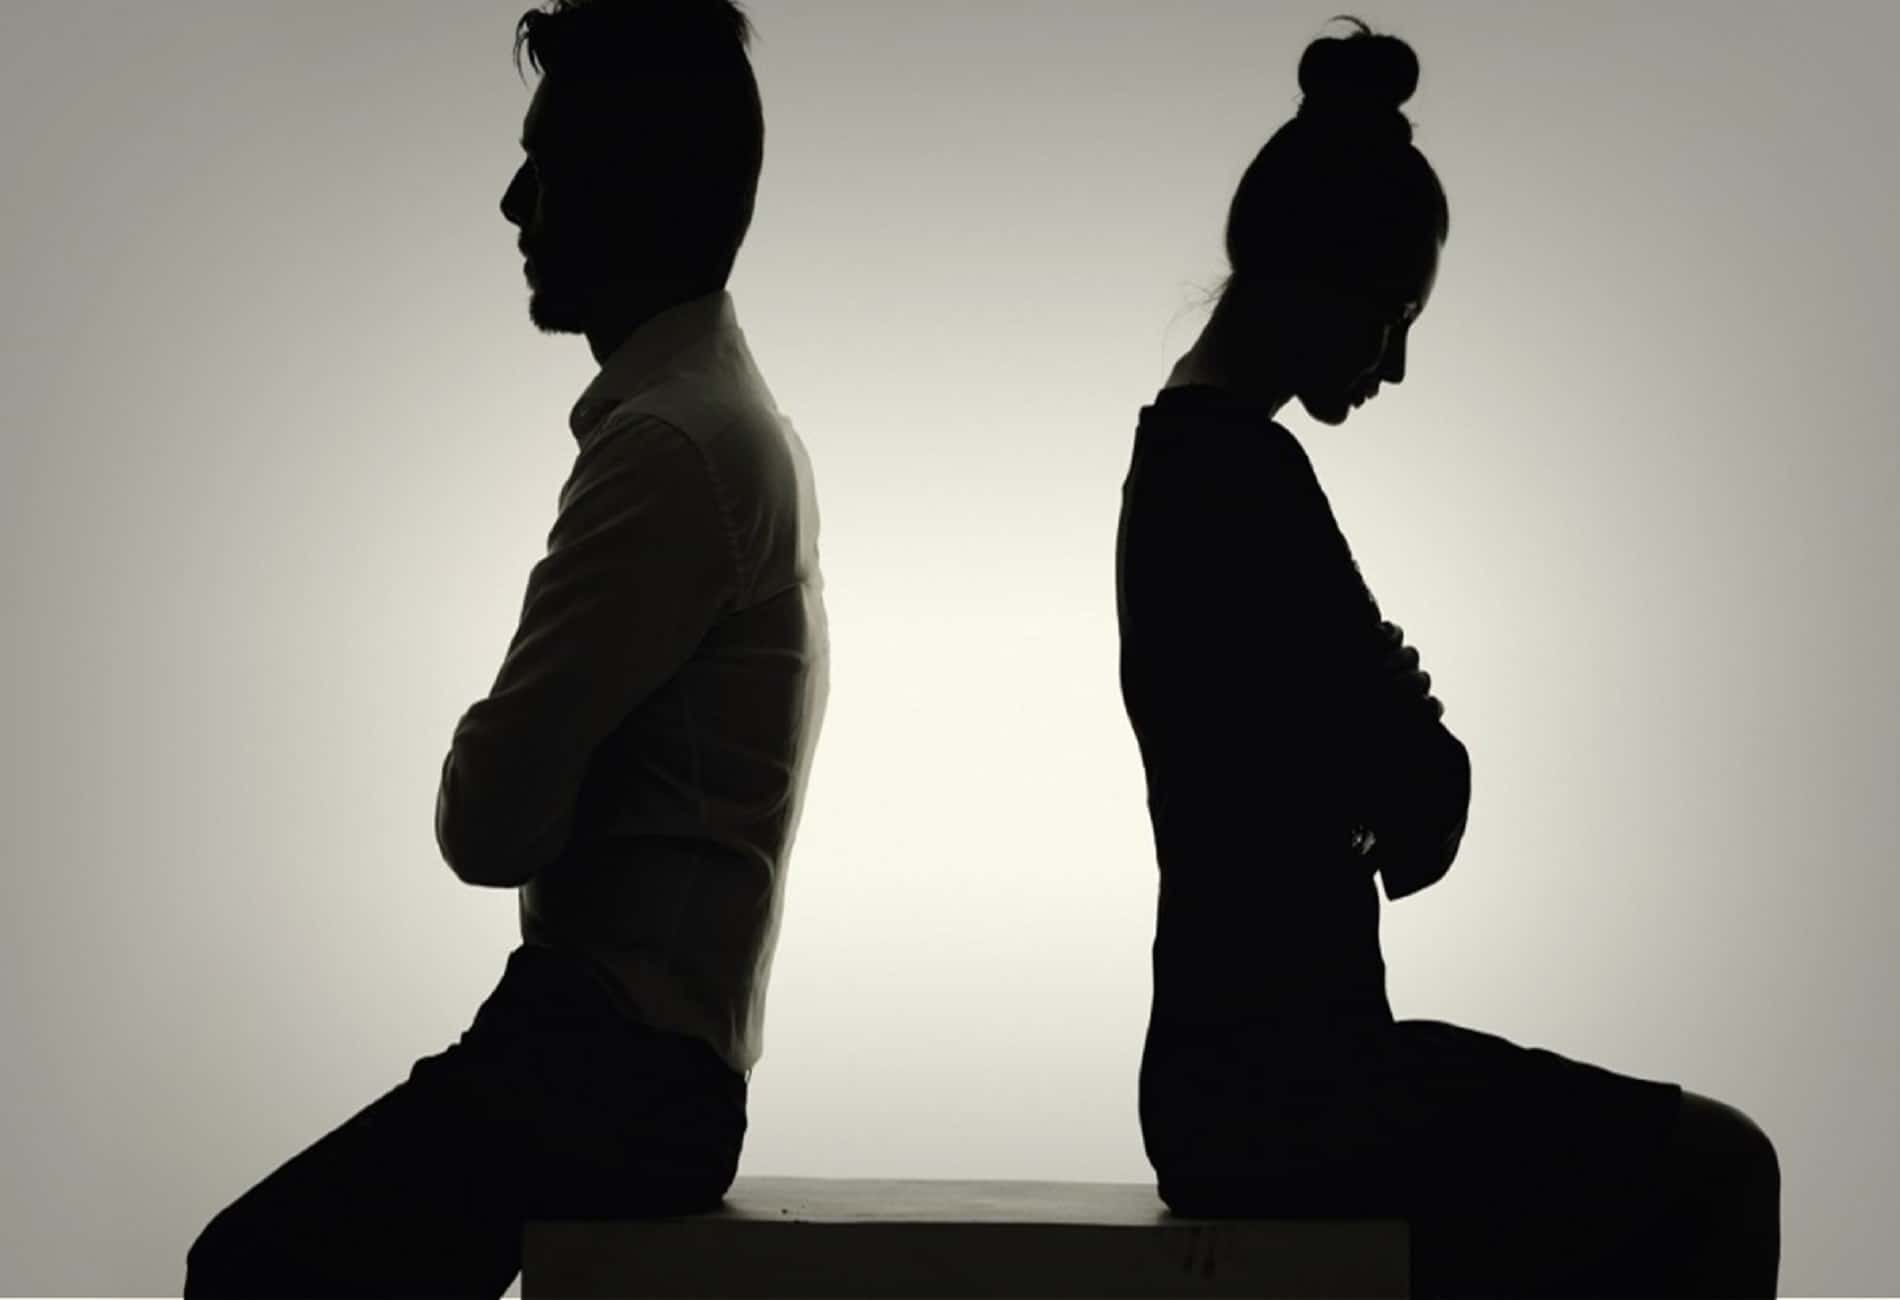 دراسة أميركية: أصدقاء السوء يزيدون فرص الطلاق بين الزوجين